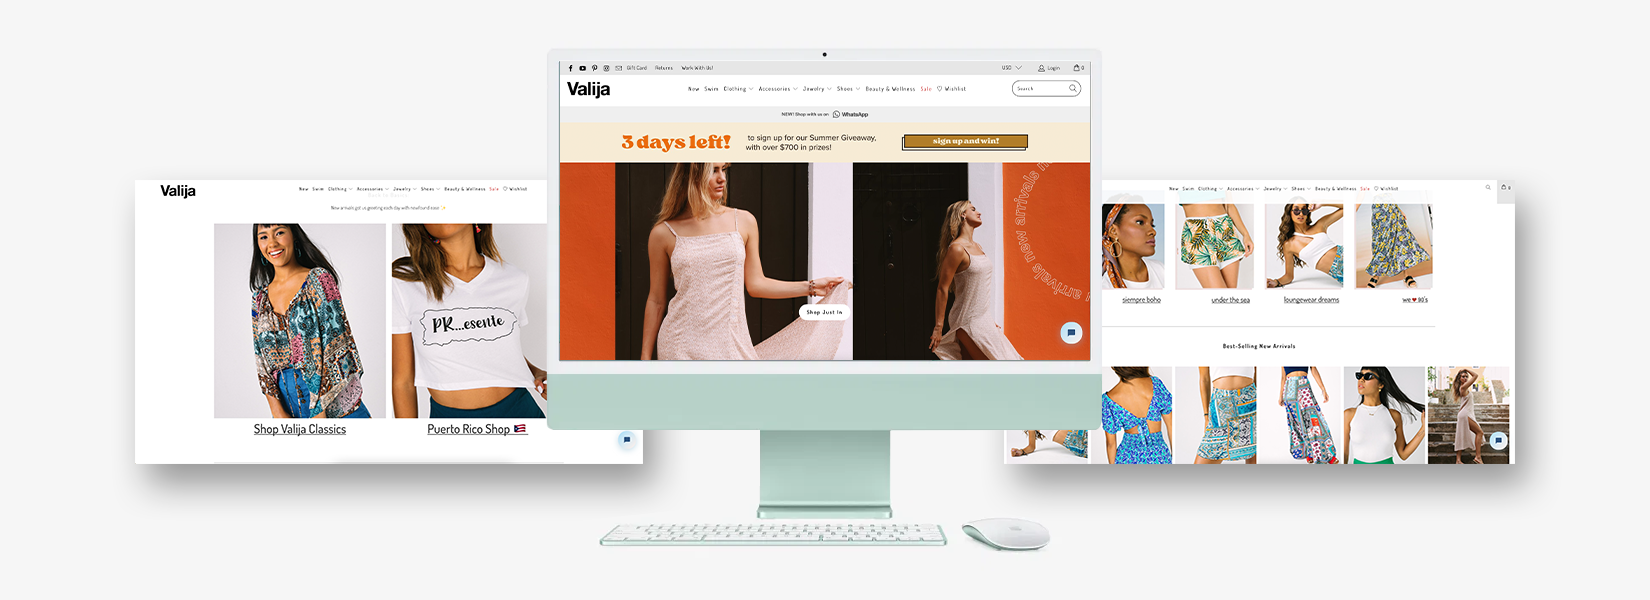 Valija es una tienda de ropa en Shopify para inspirarte este 2021 - doos estudio Shopify eCommerce Experts